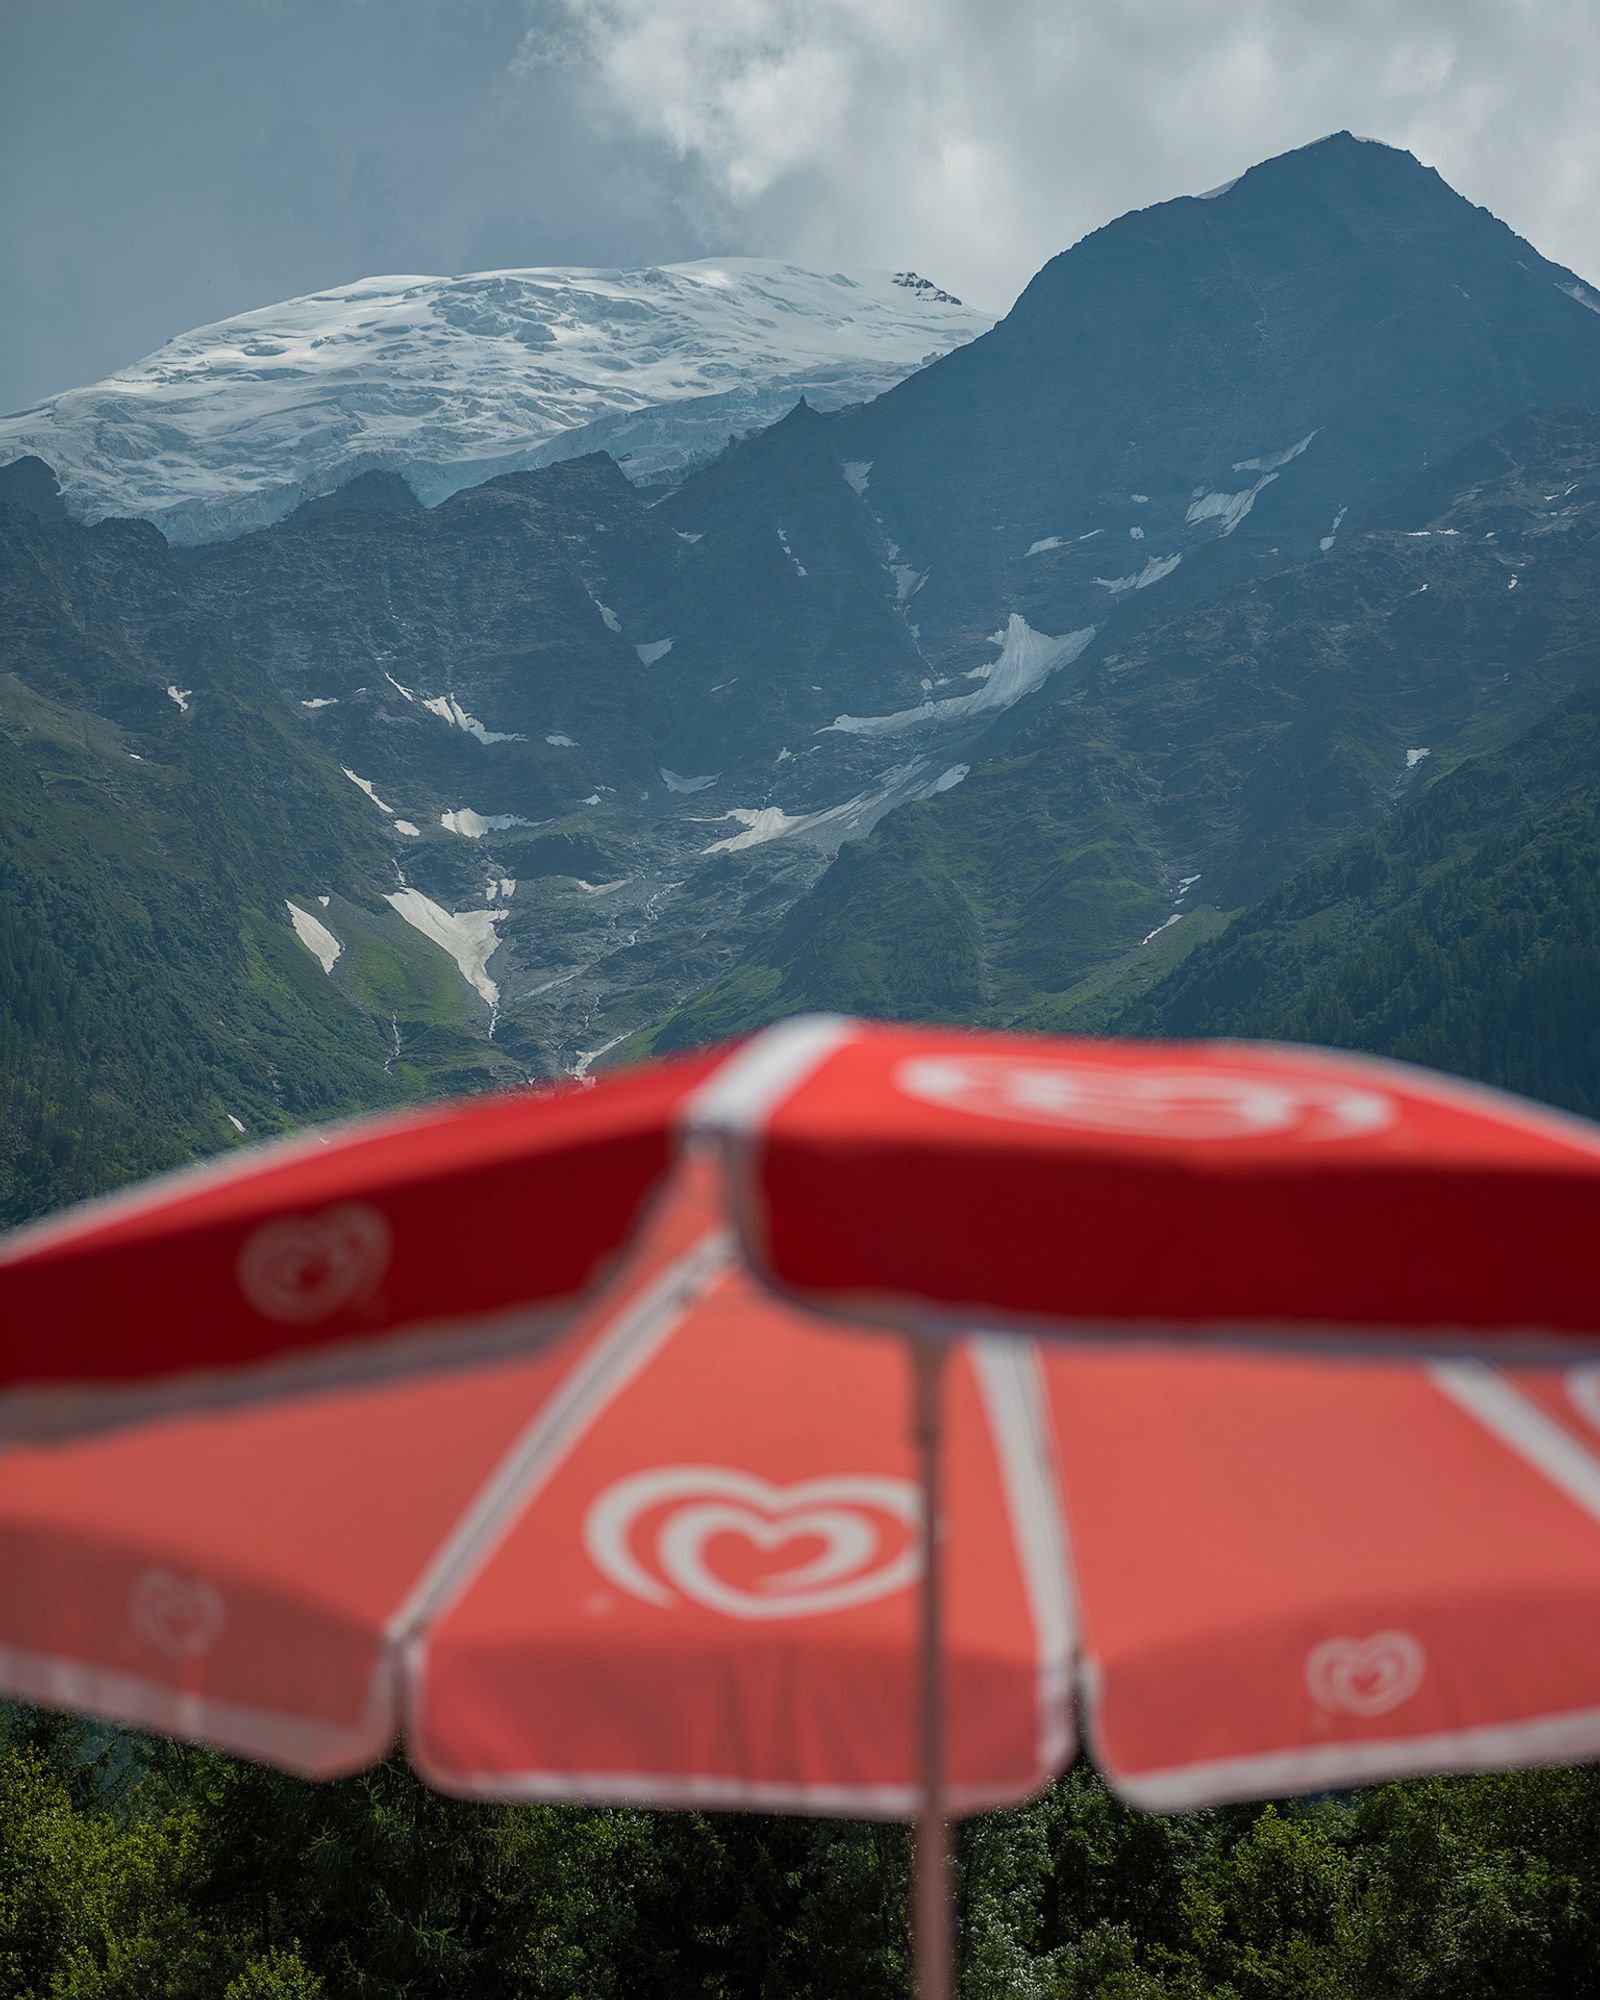 © Niké Dolman - Mont Blanc, 2019